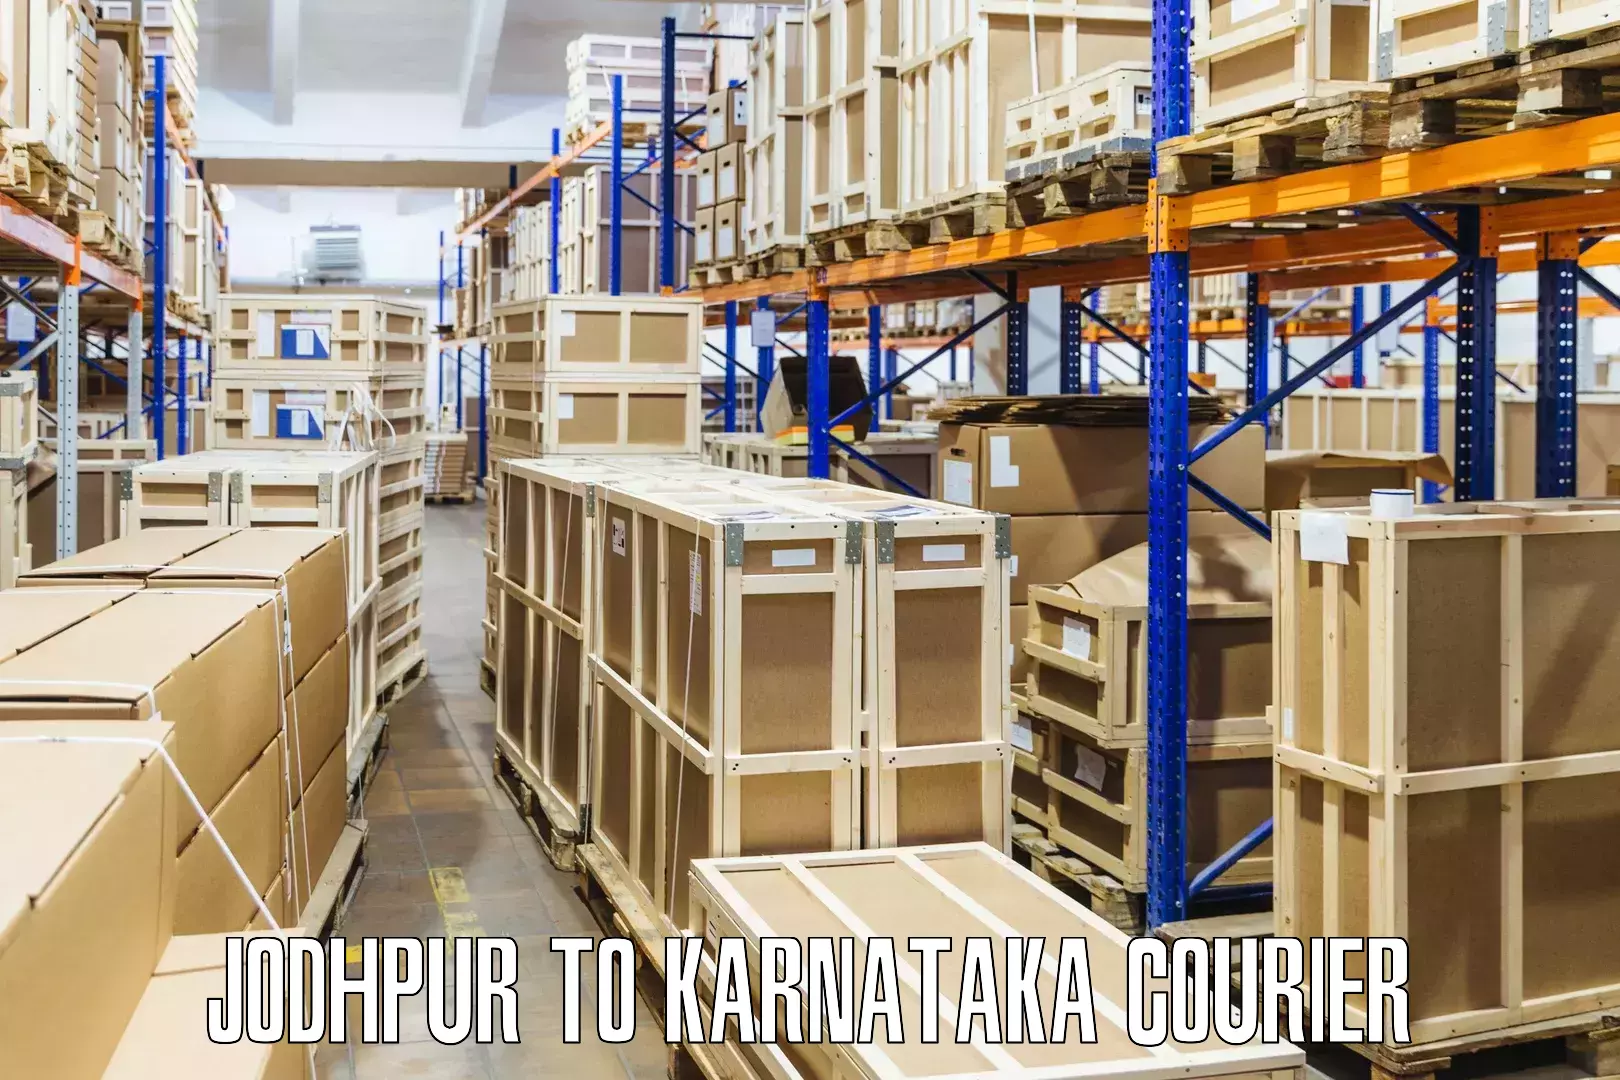 Customer-centric shipping Jodhpur to Siruguppa